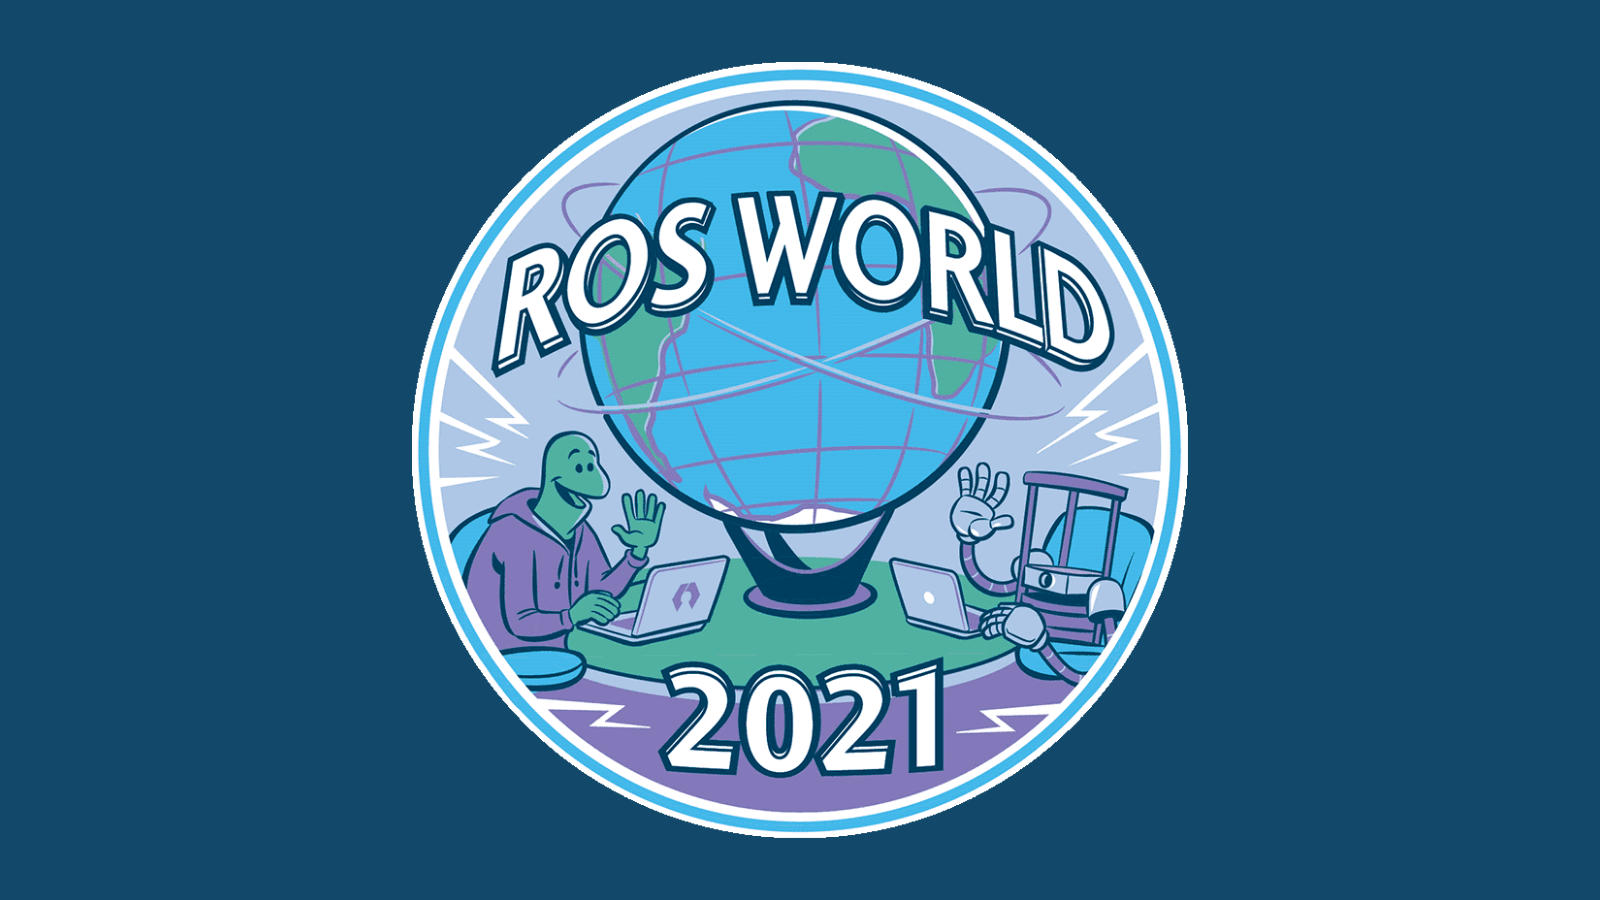 ROSWorld 2021: Keynote